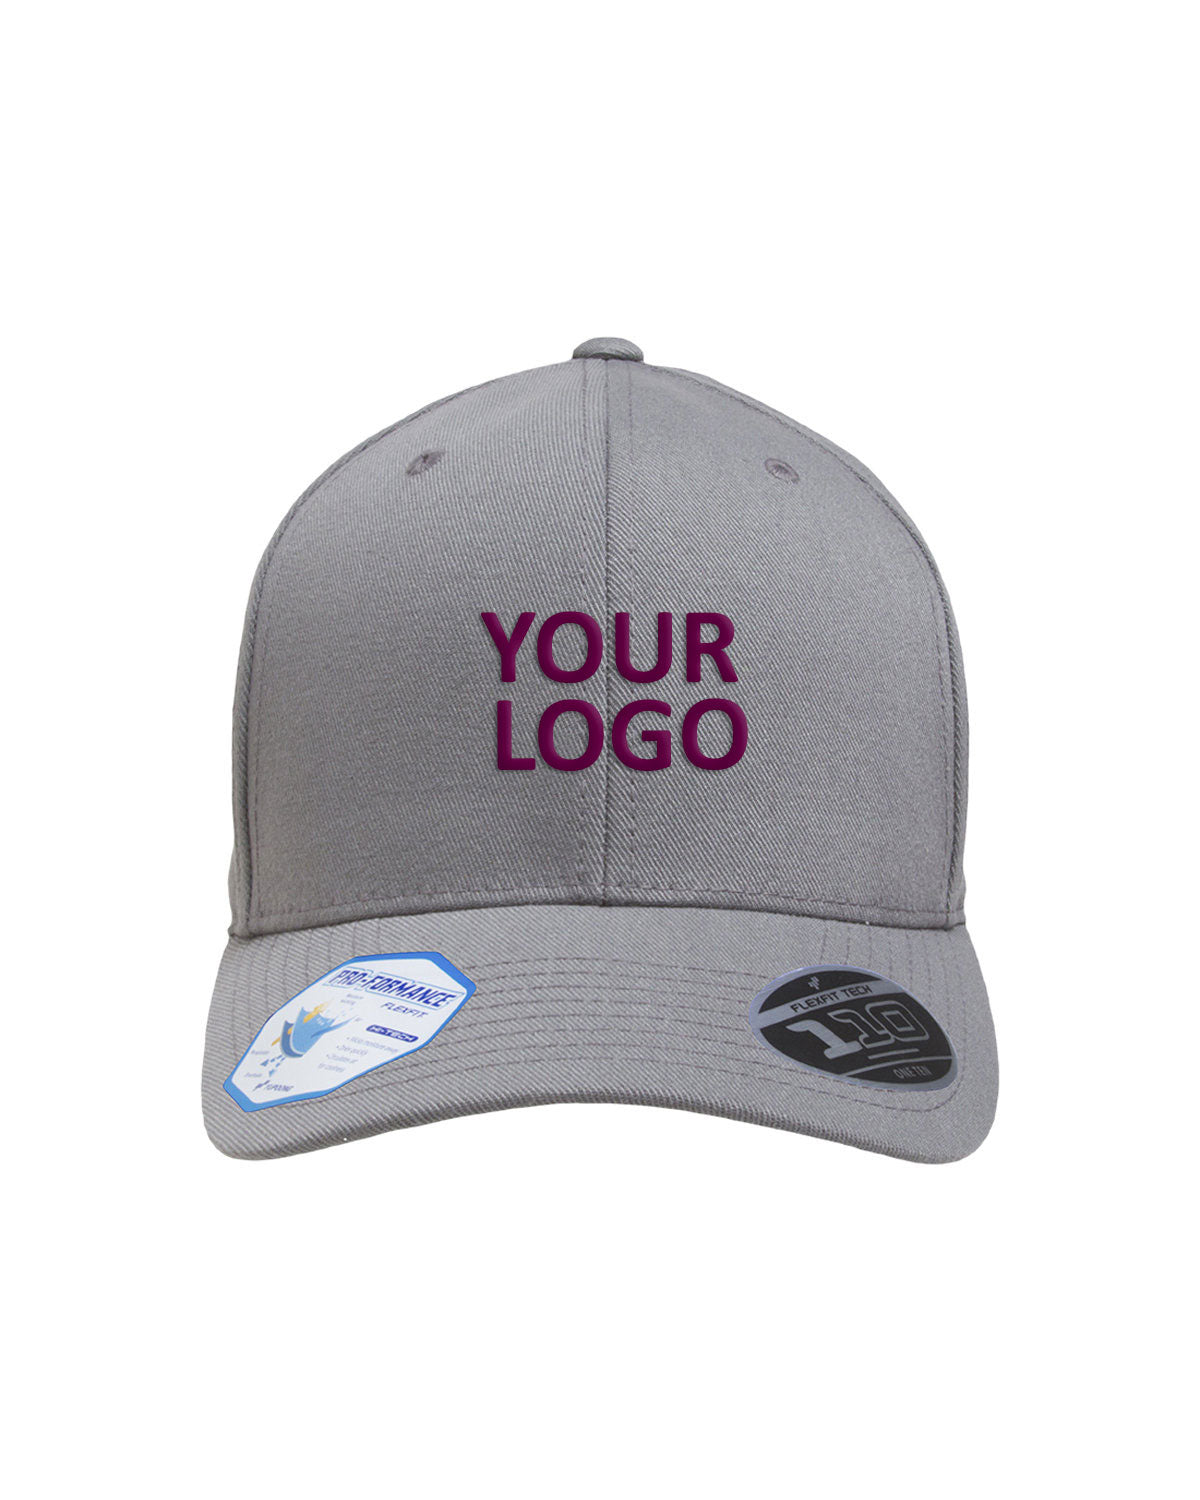 flexfit_110c_grey_company_logo_headwear